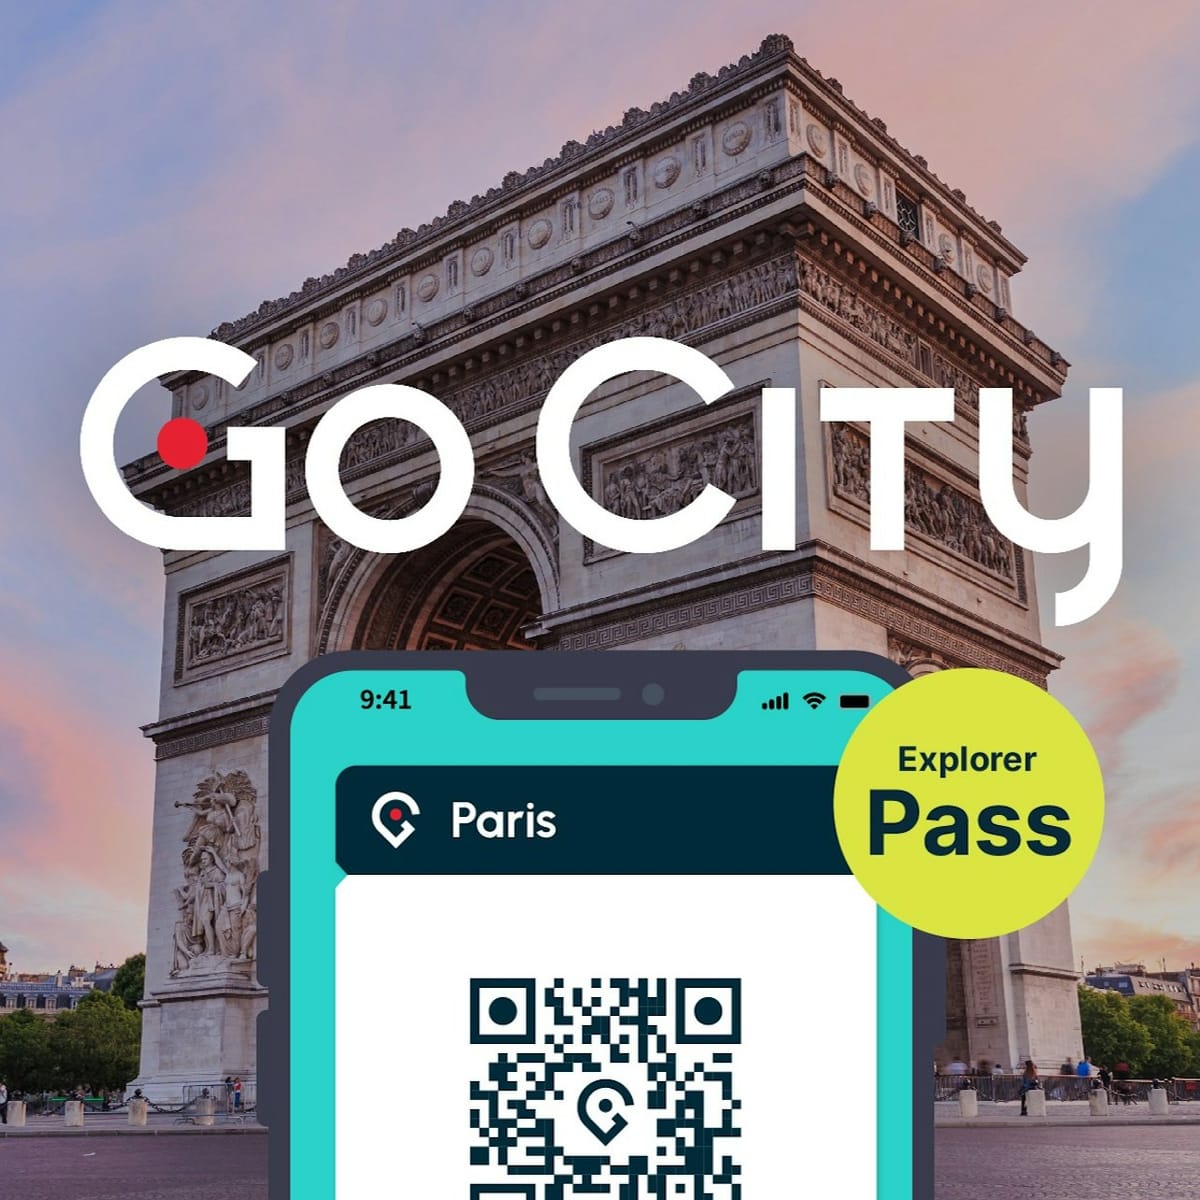 go-city-paris-explorer-pass_1